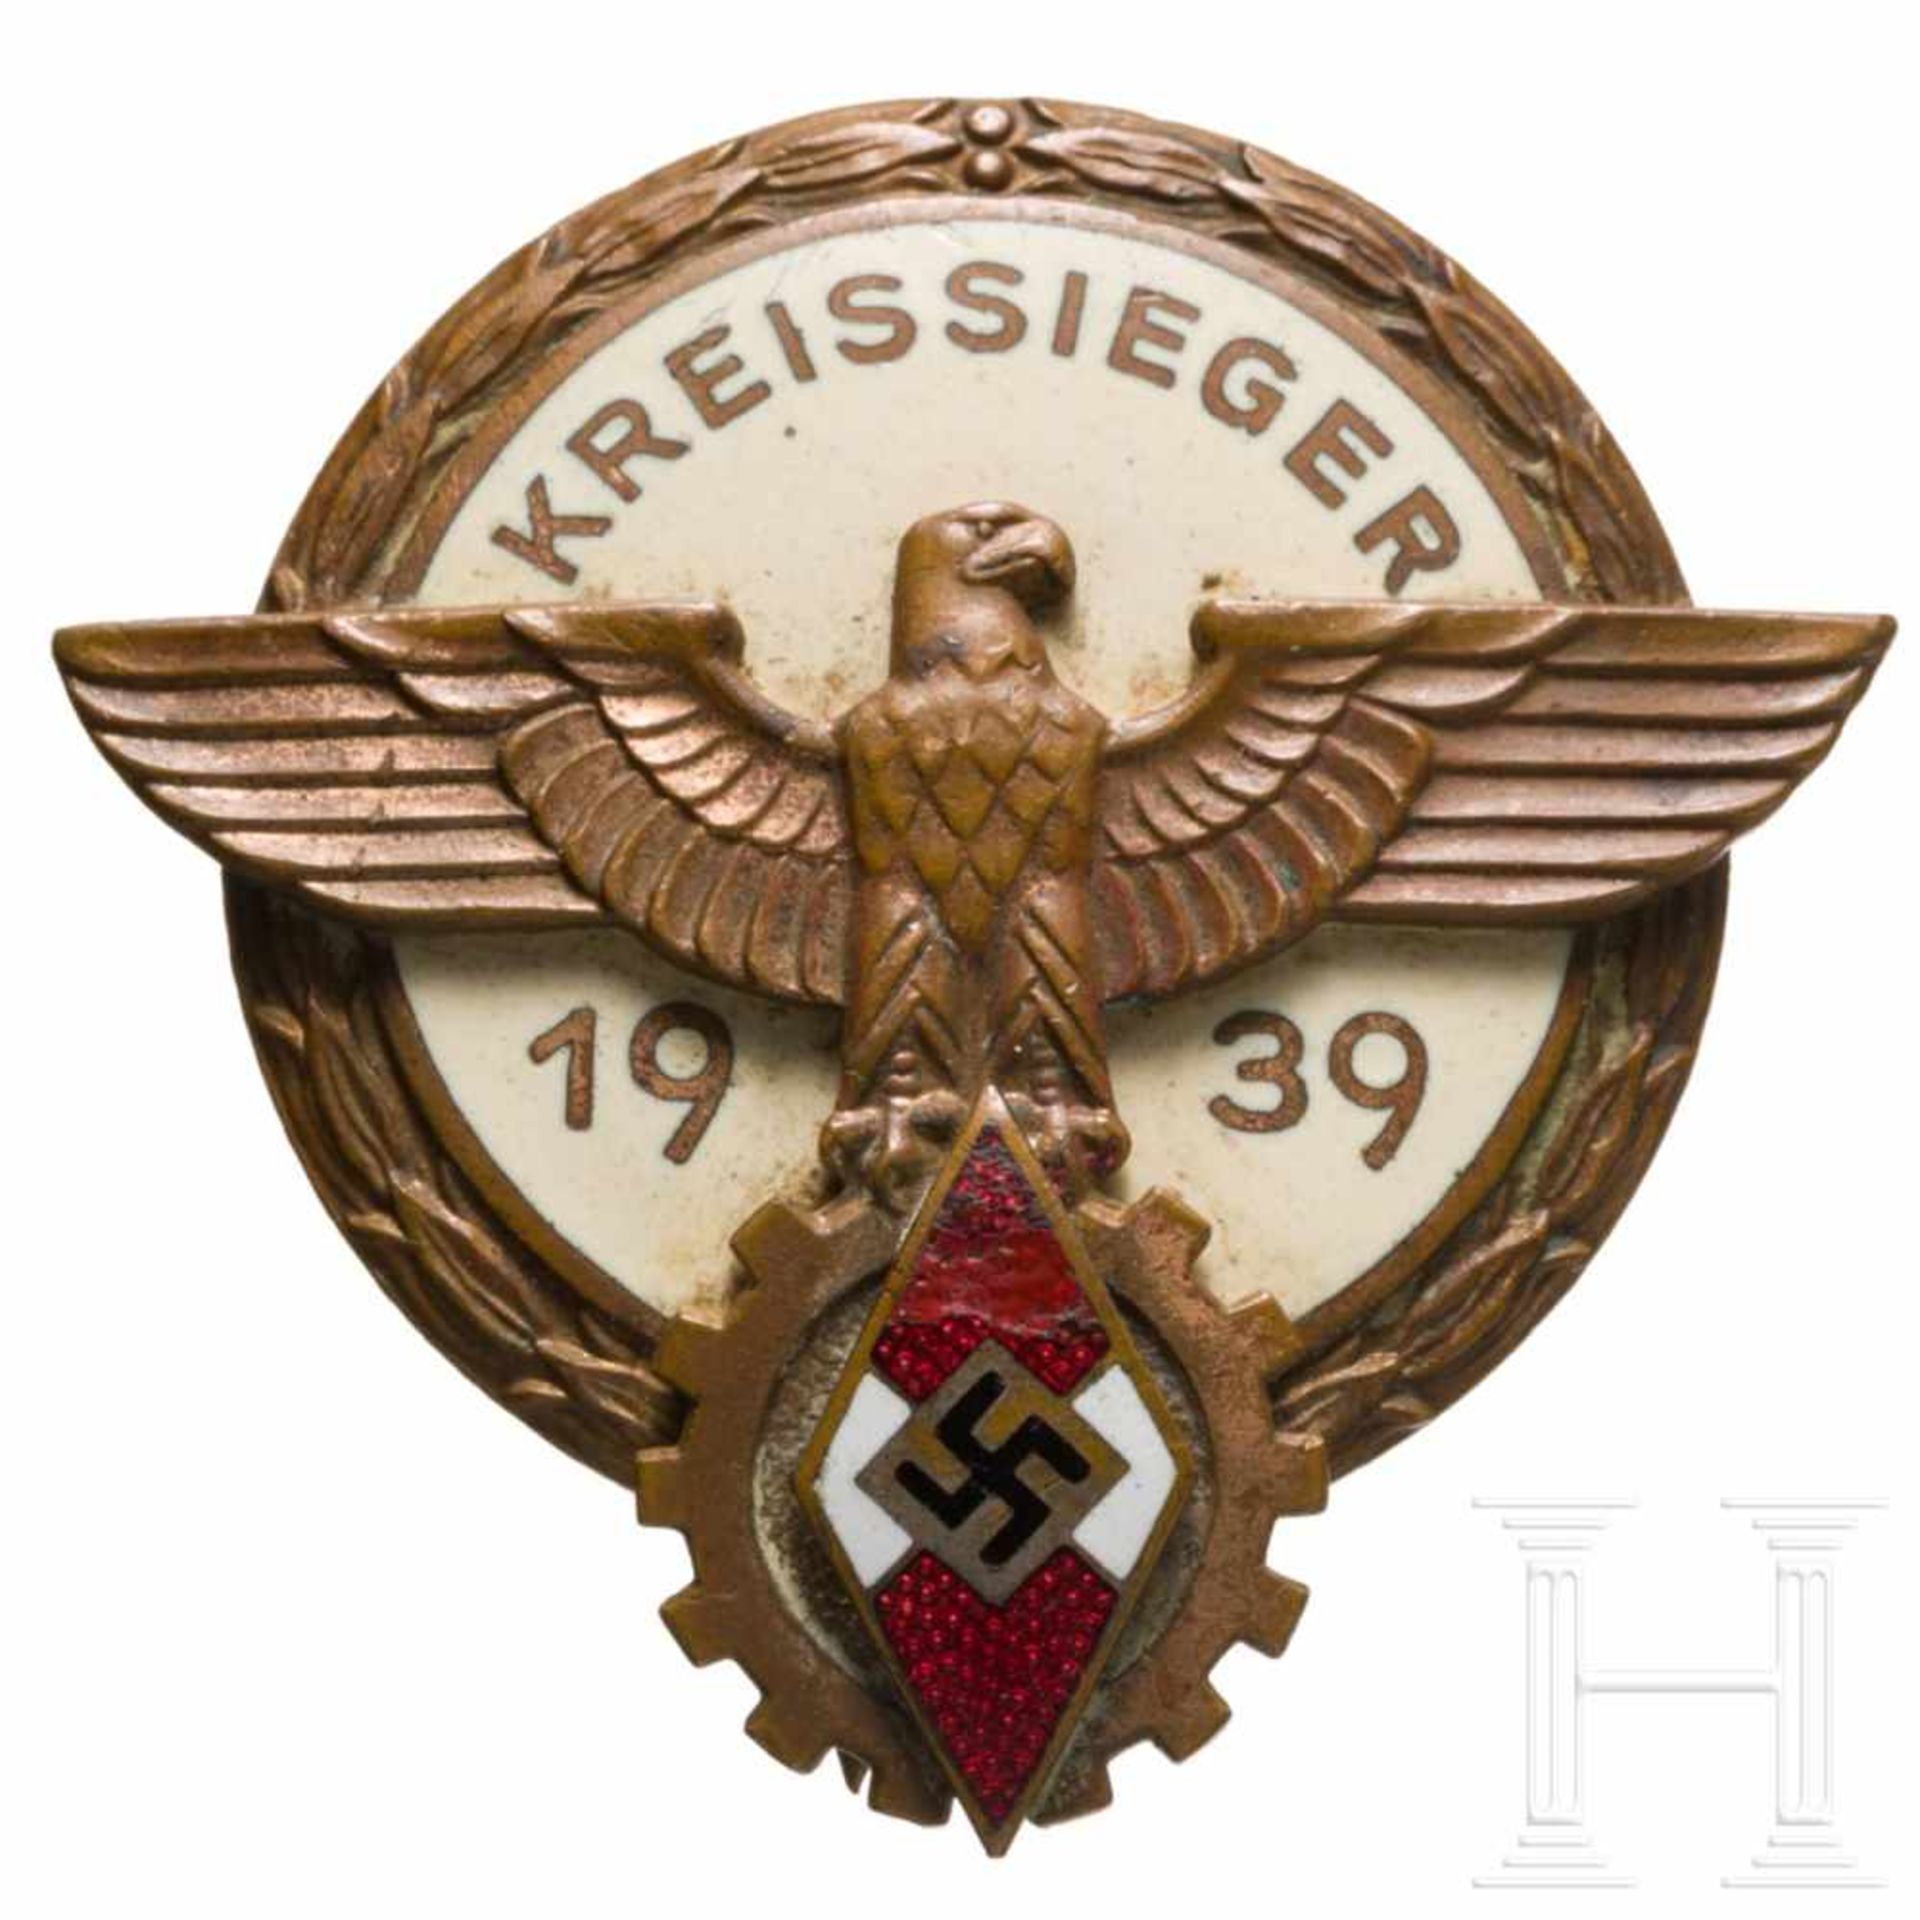 Kreissiegerabzeichen im Reichsberufswettkampf 1939